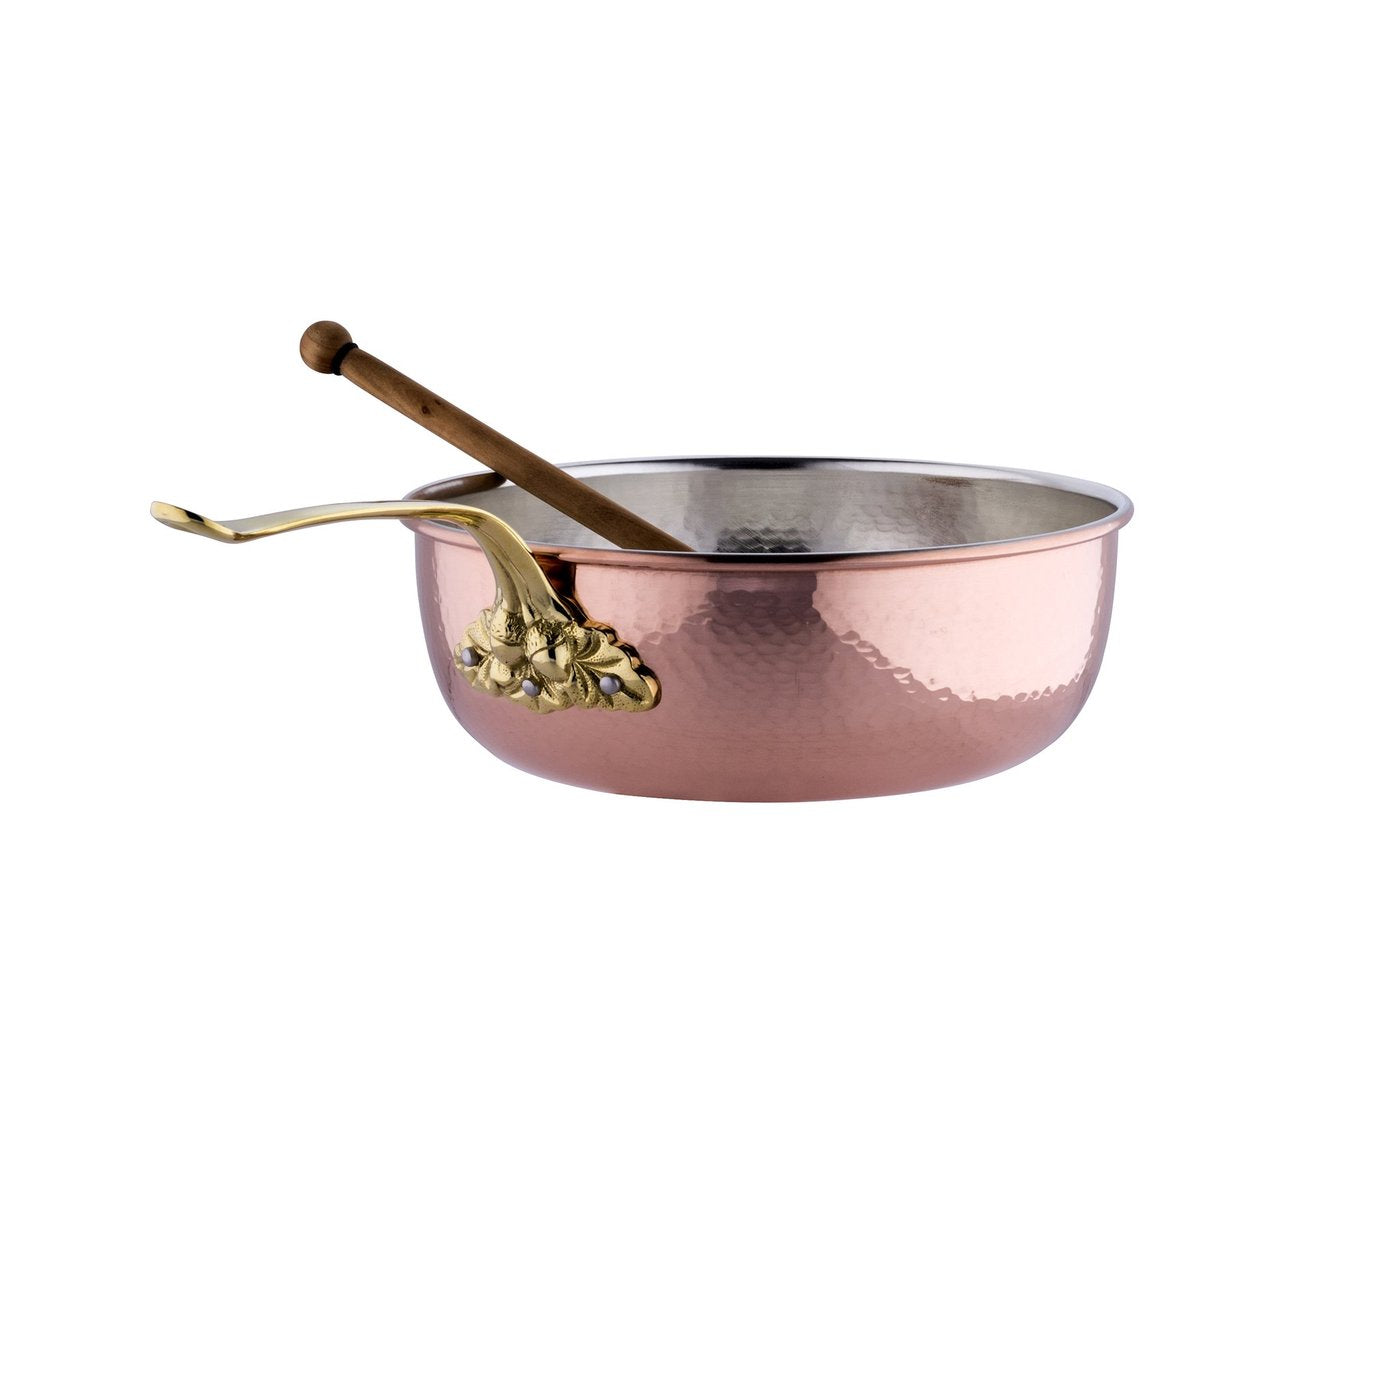 Ruffoni Historia Decor Copper Chef Pan, 4 qt., w/Spoon